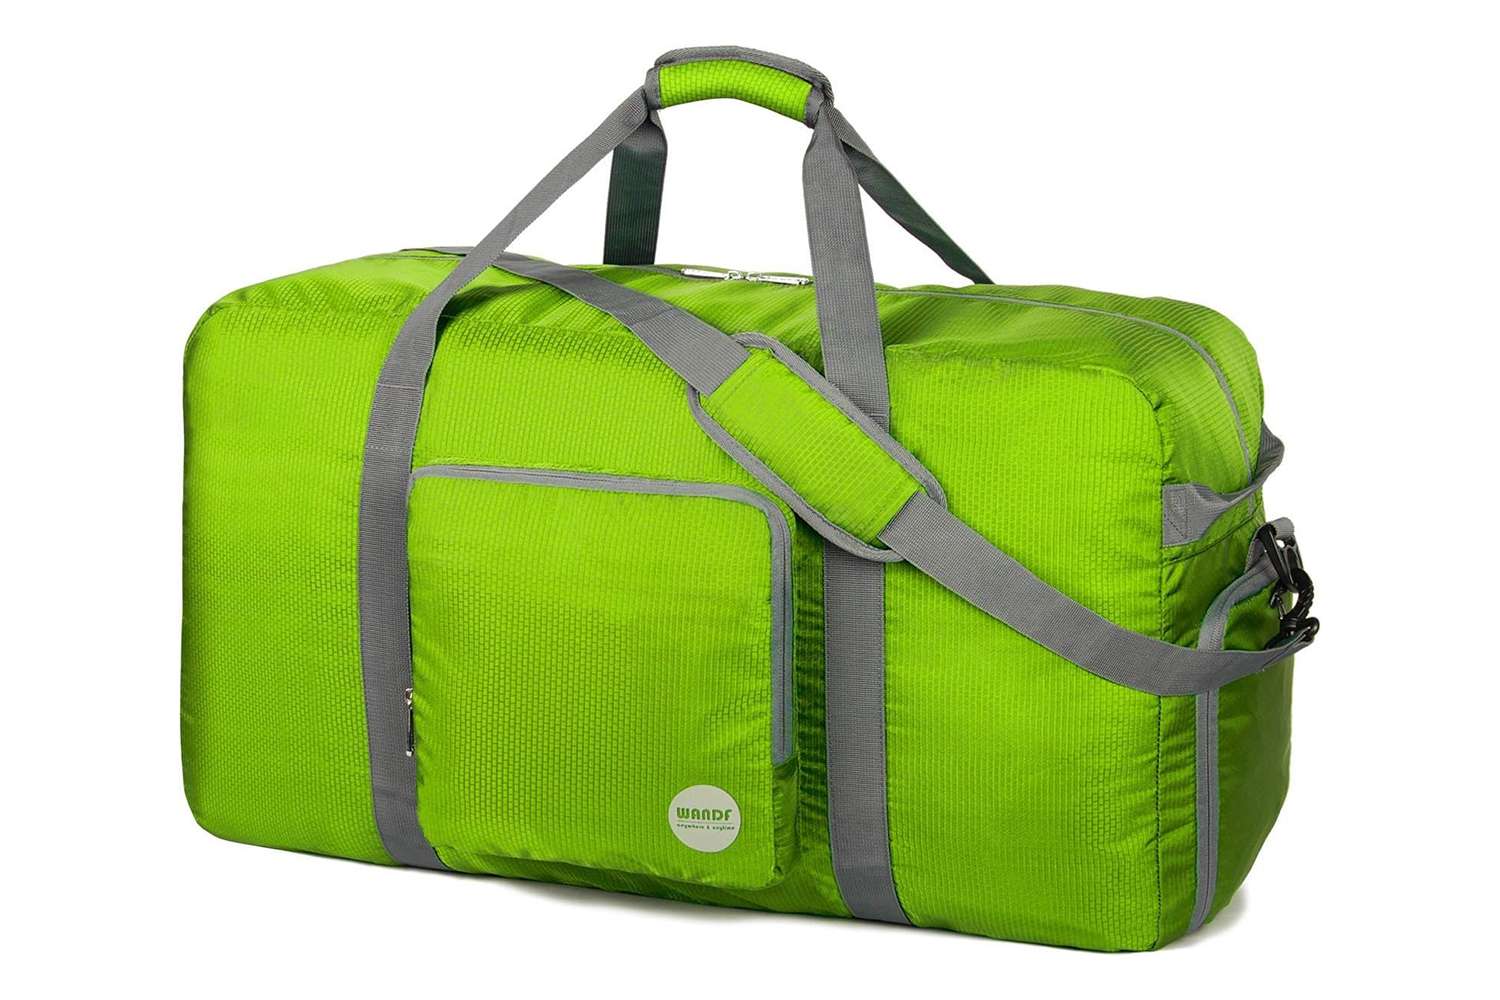 WANDF Foldable Duffle Bag 24" 28" 32" 36" 60L 80L 100L 120L for Travel Gym Sports Lightweight Luggage Duffel By WANDF